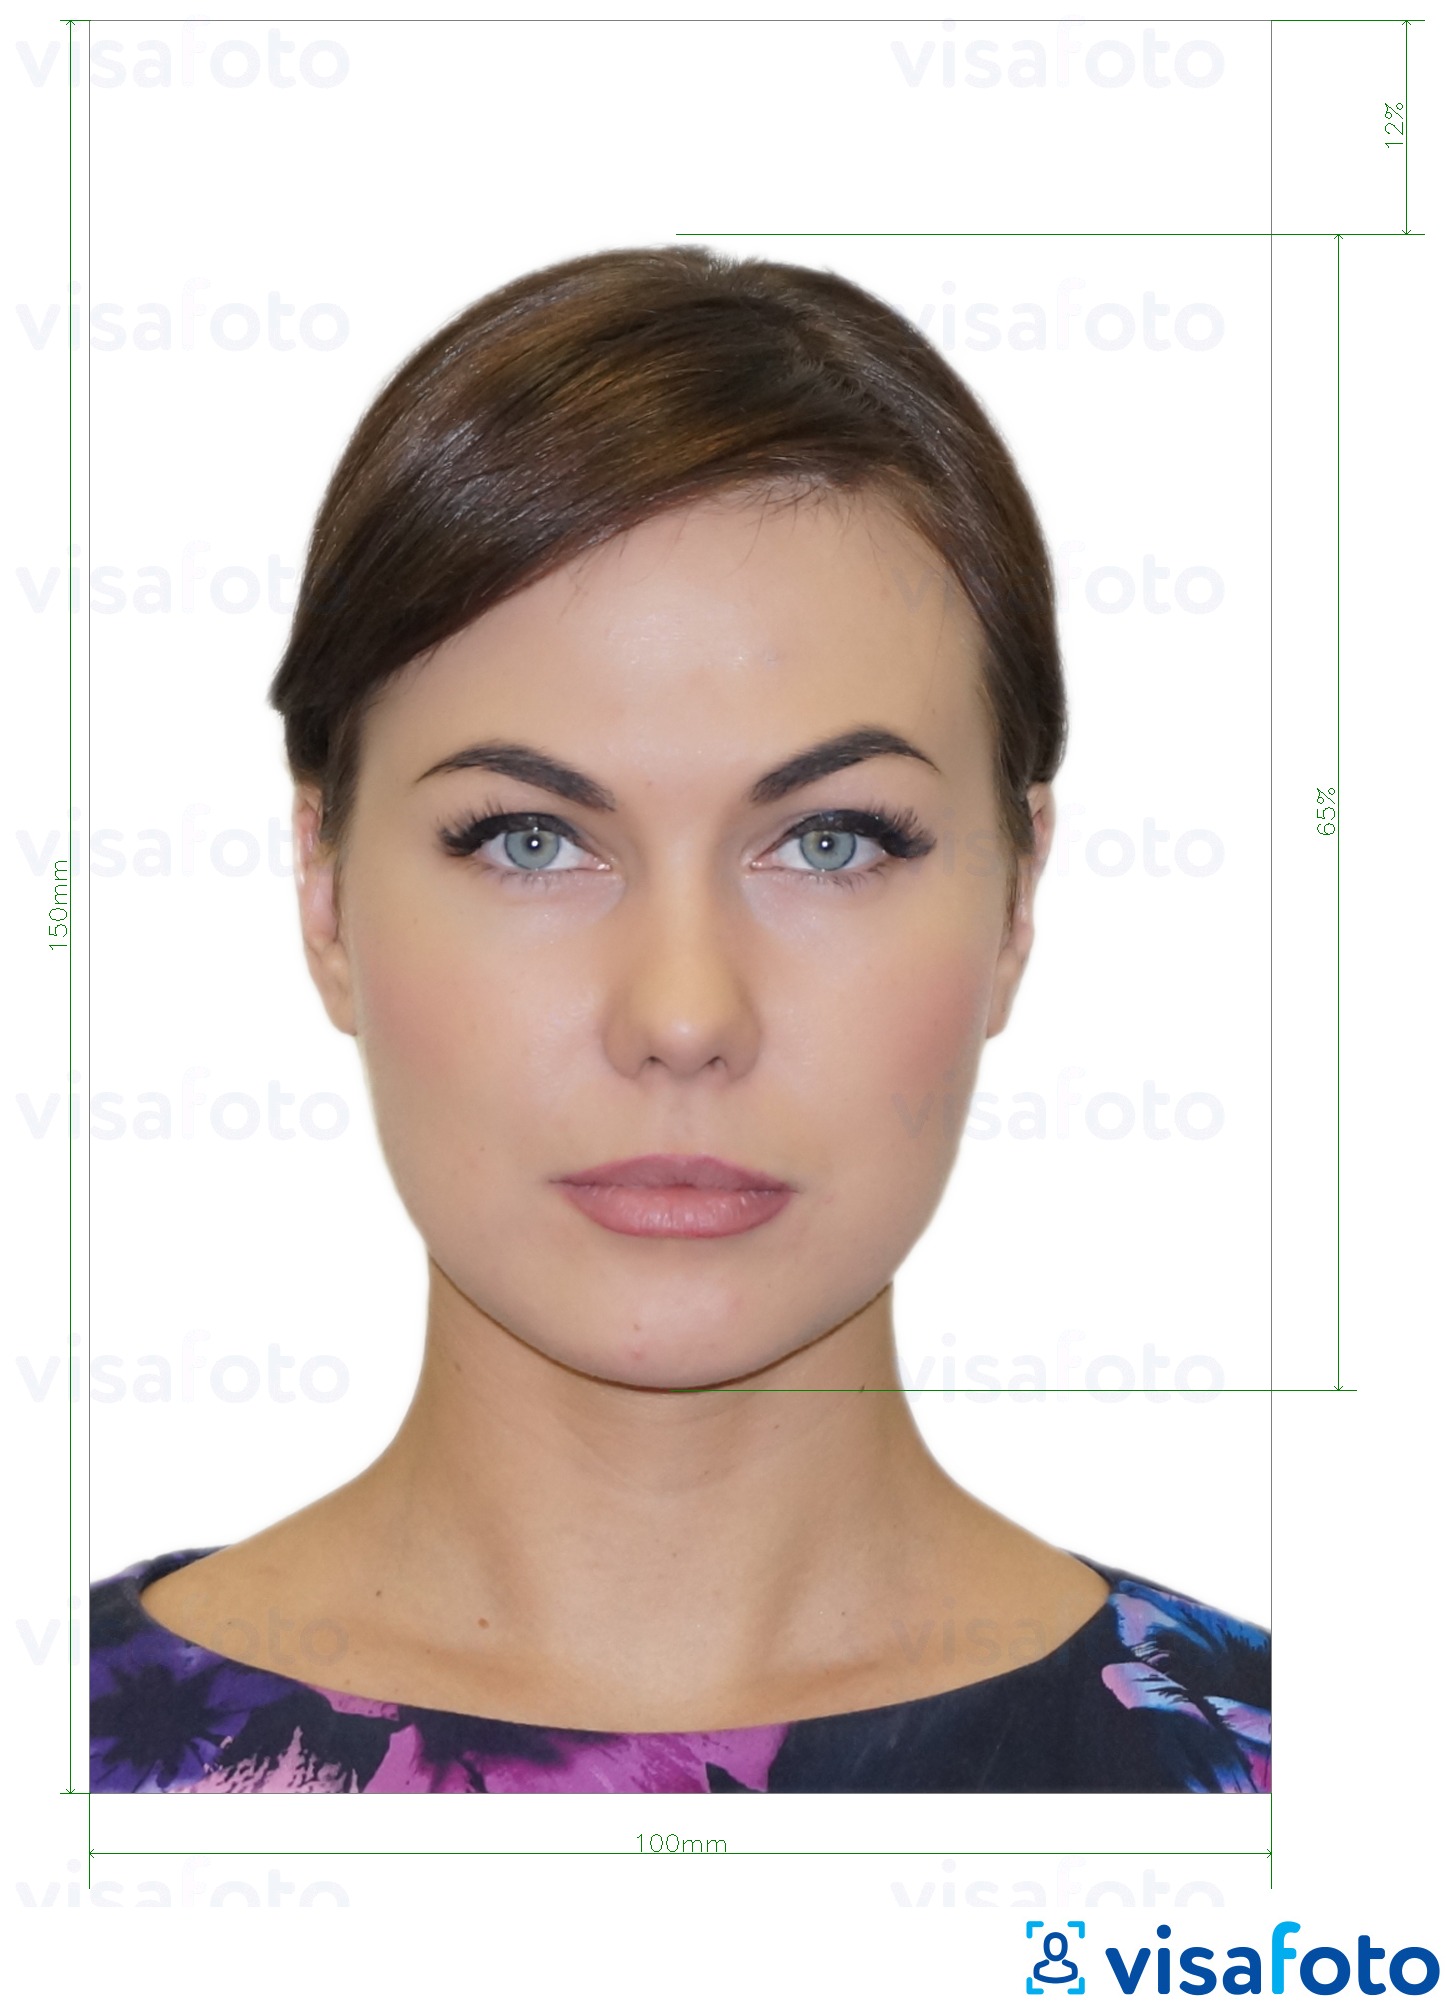 Exemples sur des photos pour Moldavie Carte d'identité (Buletin de identitate) 10x15 cm avec les spécifications de taille exactes